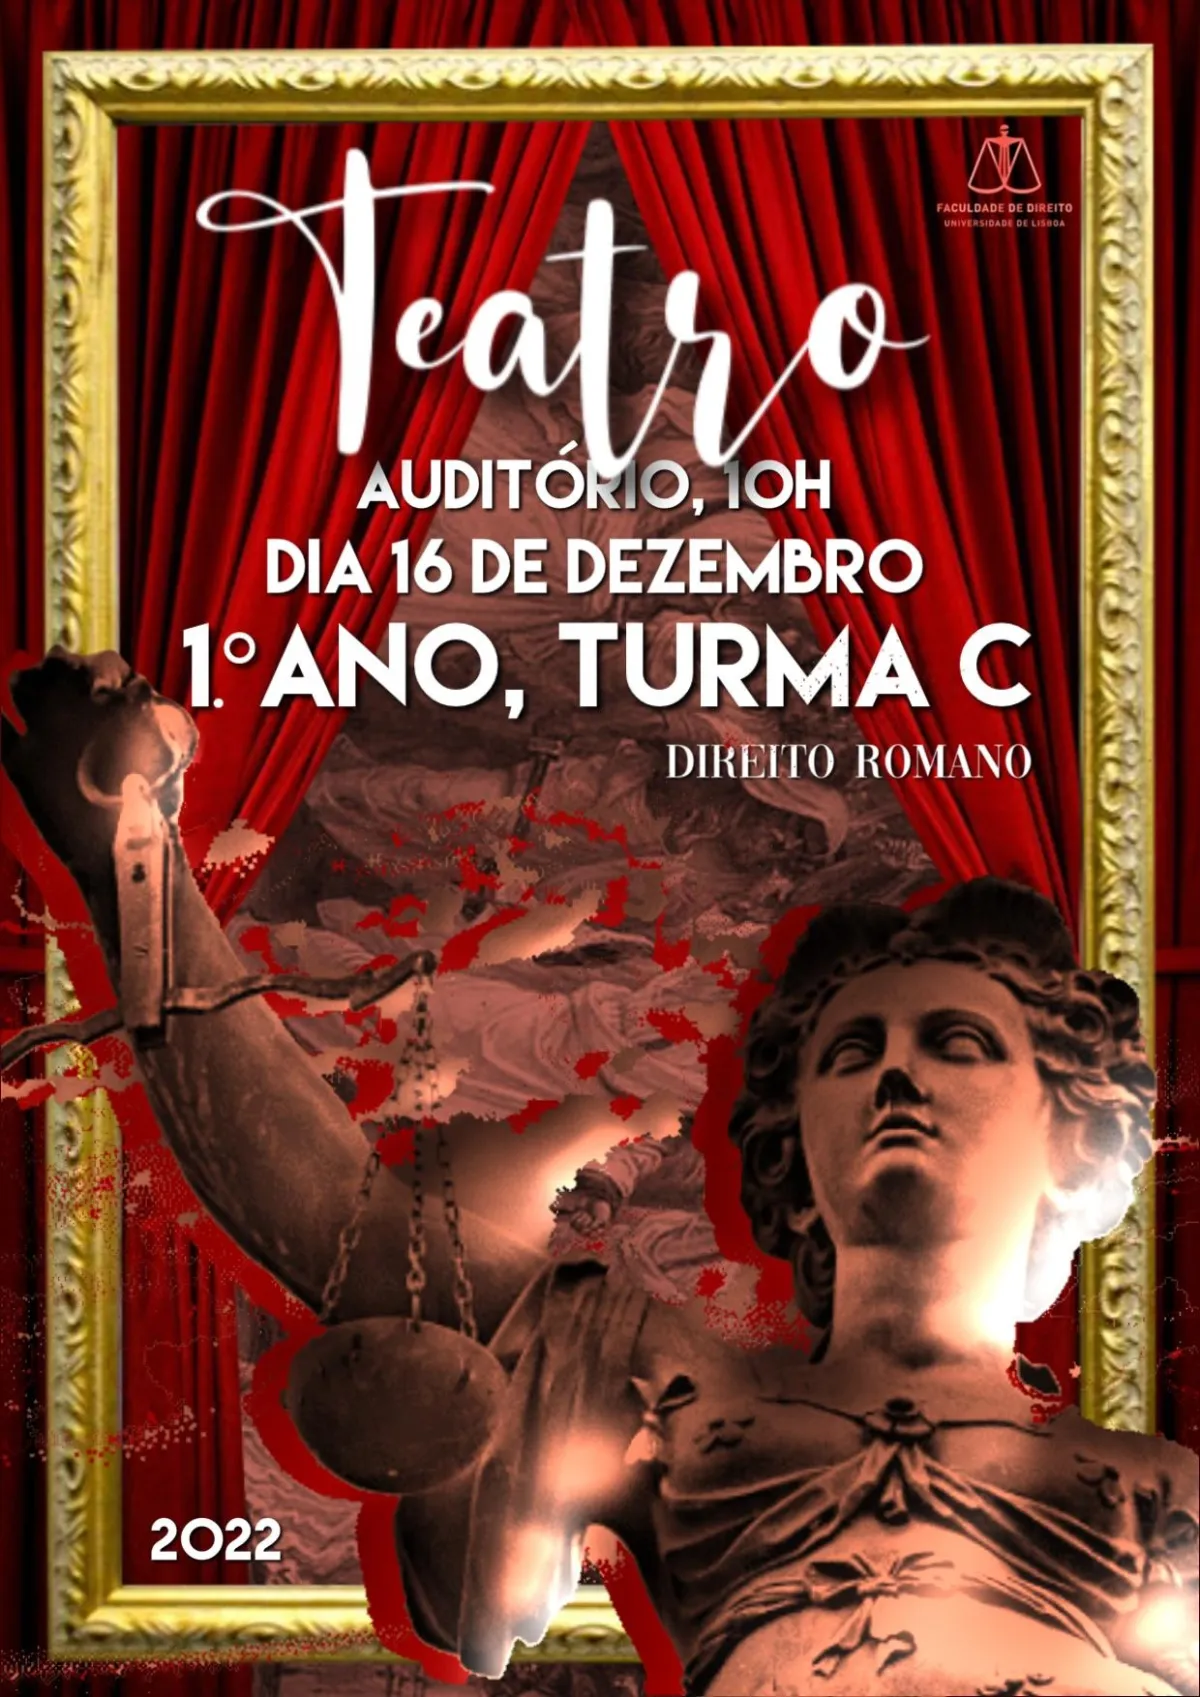 Teatro - Venha conhecer o Direito Romano - 1.º ano, turma C